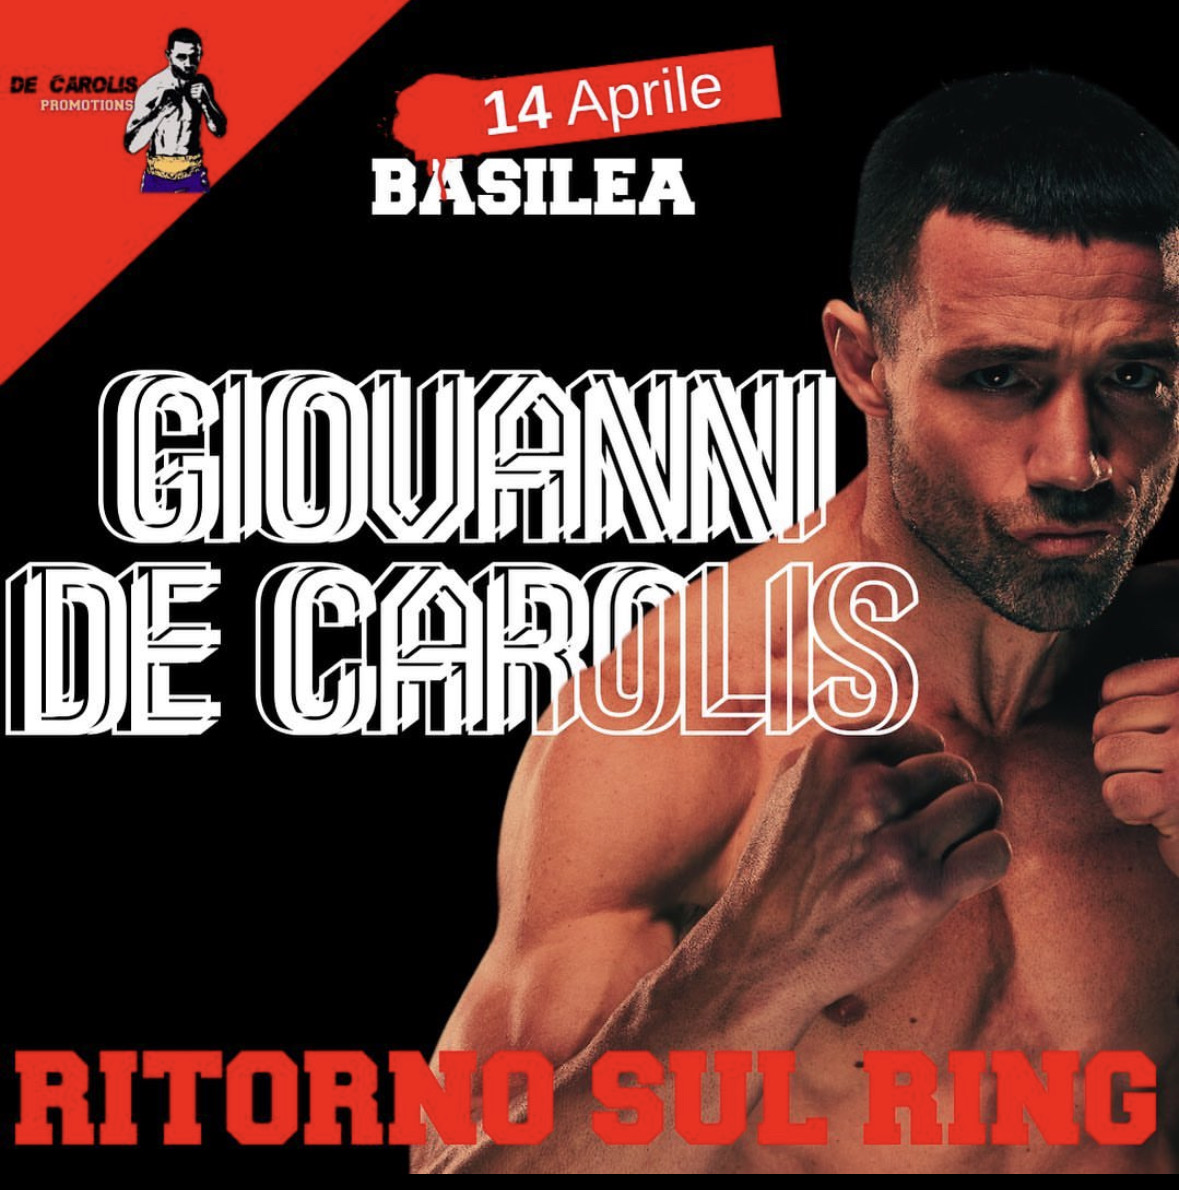 Il 14 Aprile a Basilea il ritorno sul ring di Giovanni De Carolis 